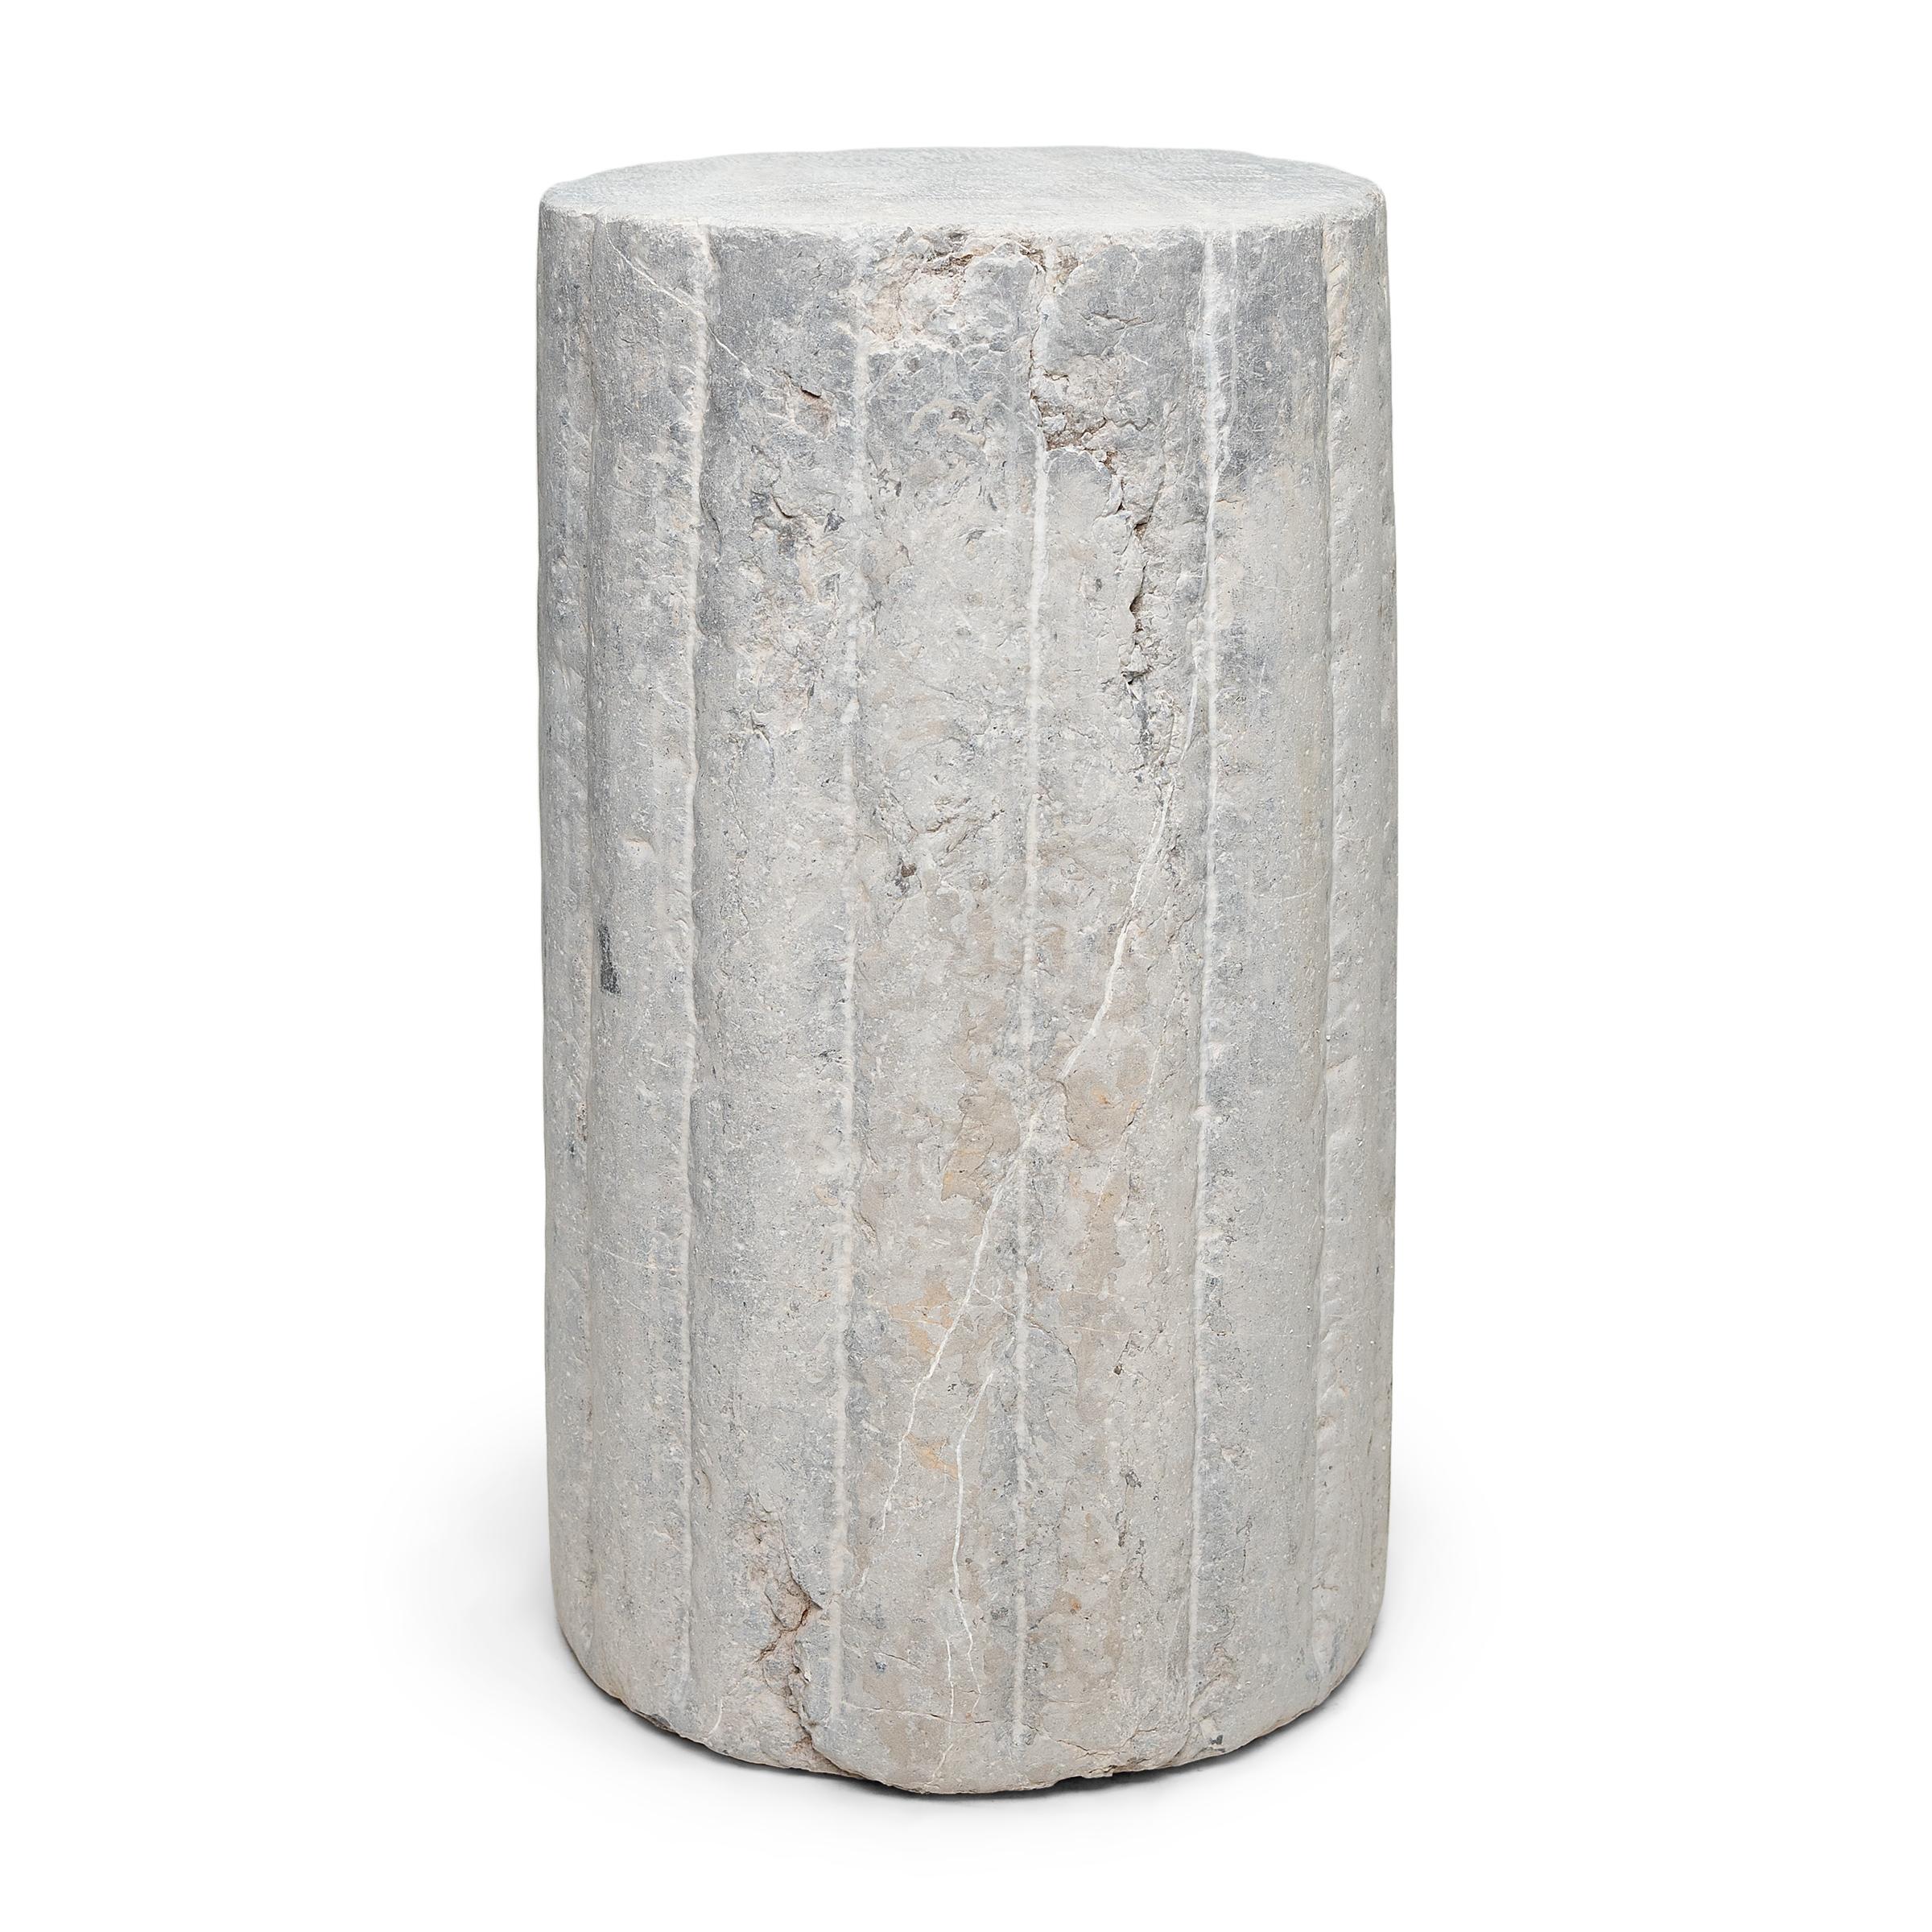 Ce piédestal en pierre inhabituel est en fait une pierre de moulin cylindrique datant de la fin du XIXe siècle. Sculptée à la main dans une pierre calcaire massive à la surface texturée et nervurée, cette pierre était utilisée pour battre le blé et